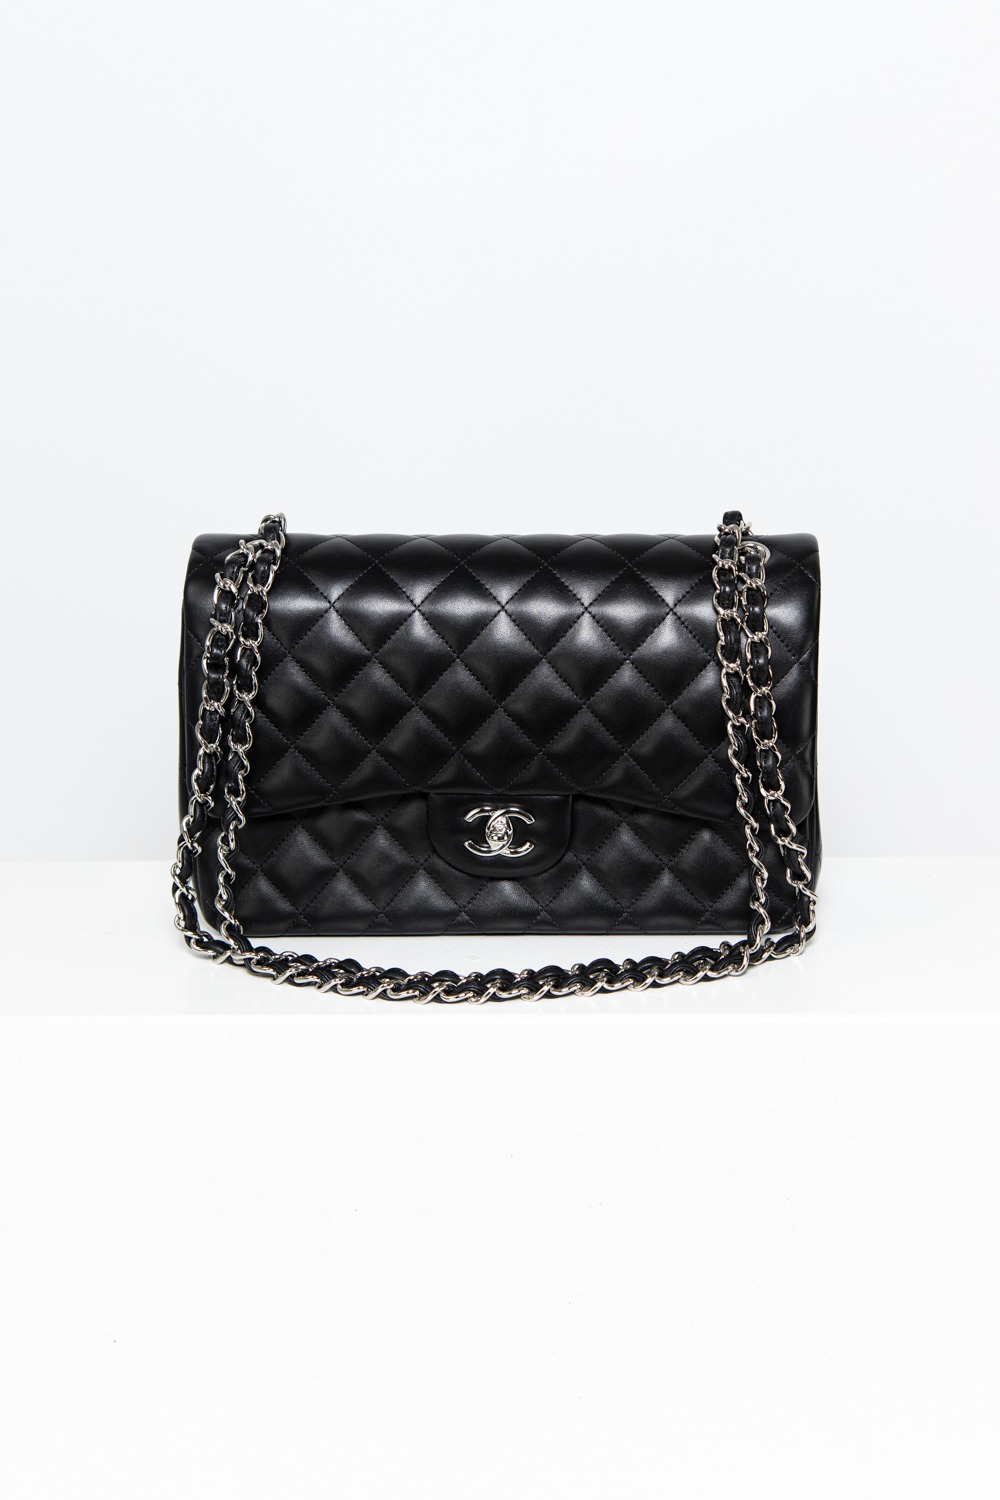 Chanel “Flap Bag” Umhängetasche in Schwarz